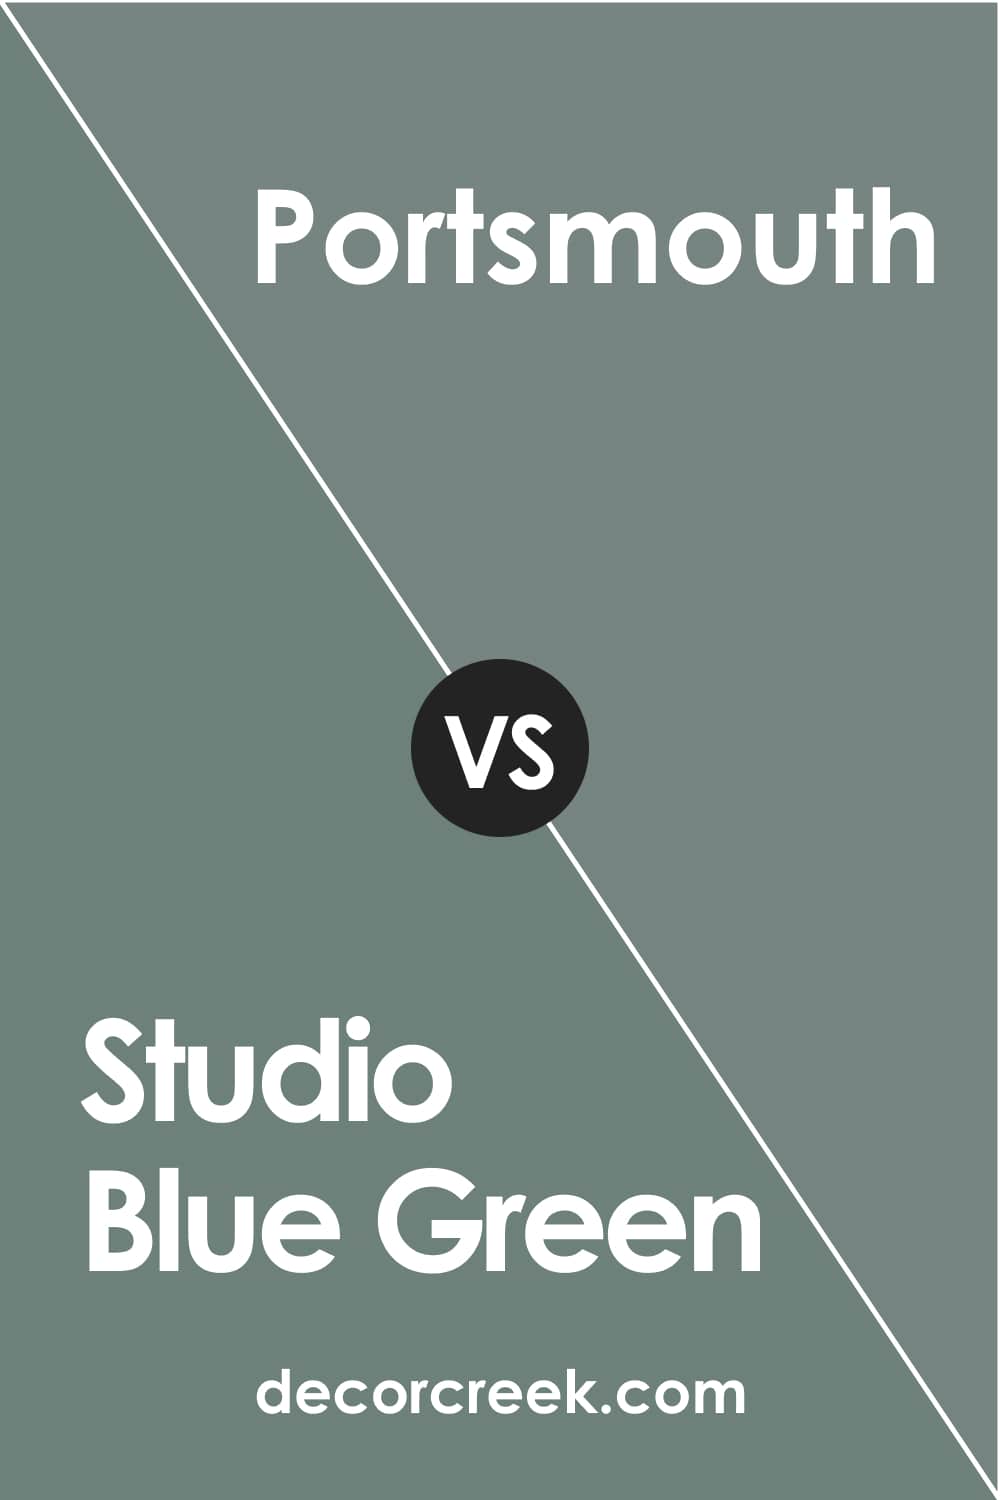 Studio Blue Green vs Portsmouth